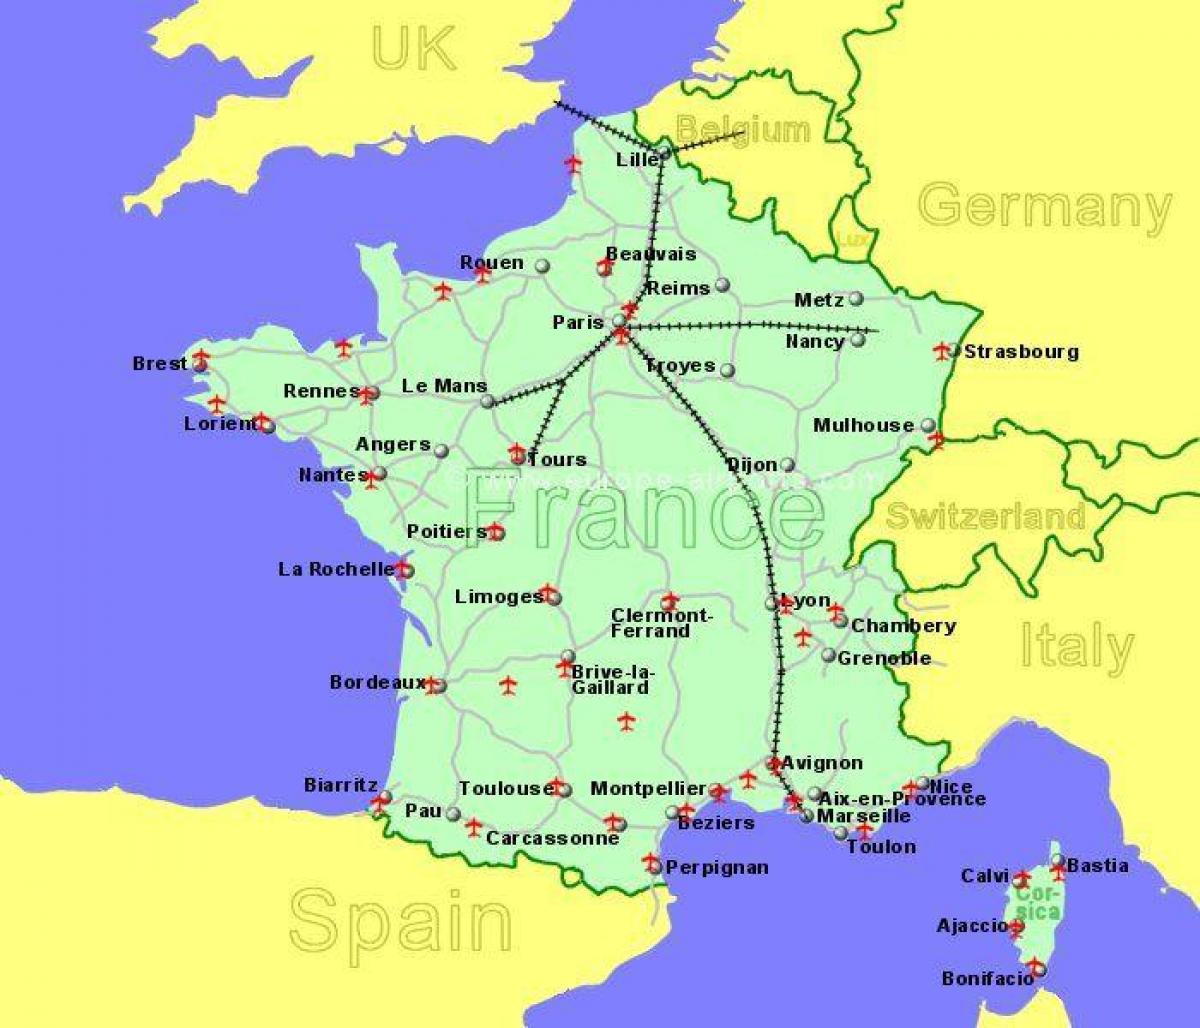 لحم الضأن غابة الأمازون استيعاب  جنوب فرنسا المطارات خريطة مطارات جنوب فرنسا خريطة (أوروبا الغربية - أوروبا)